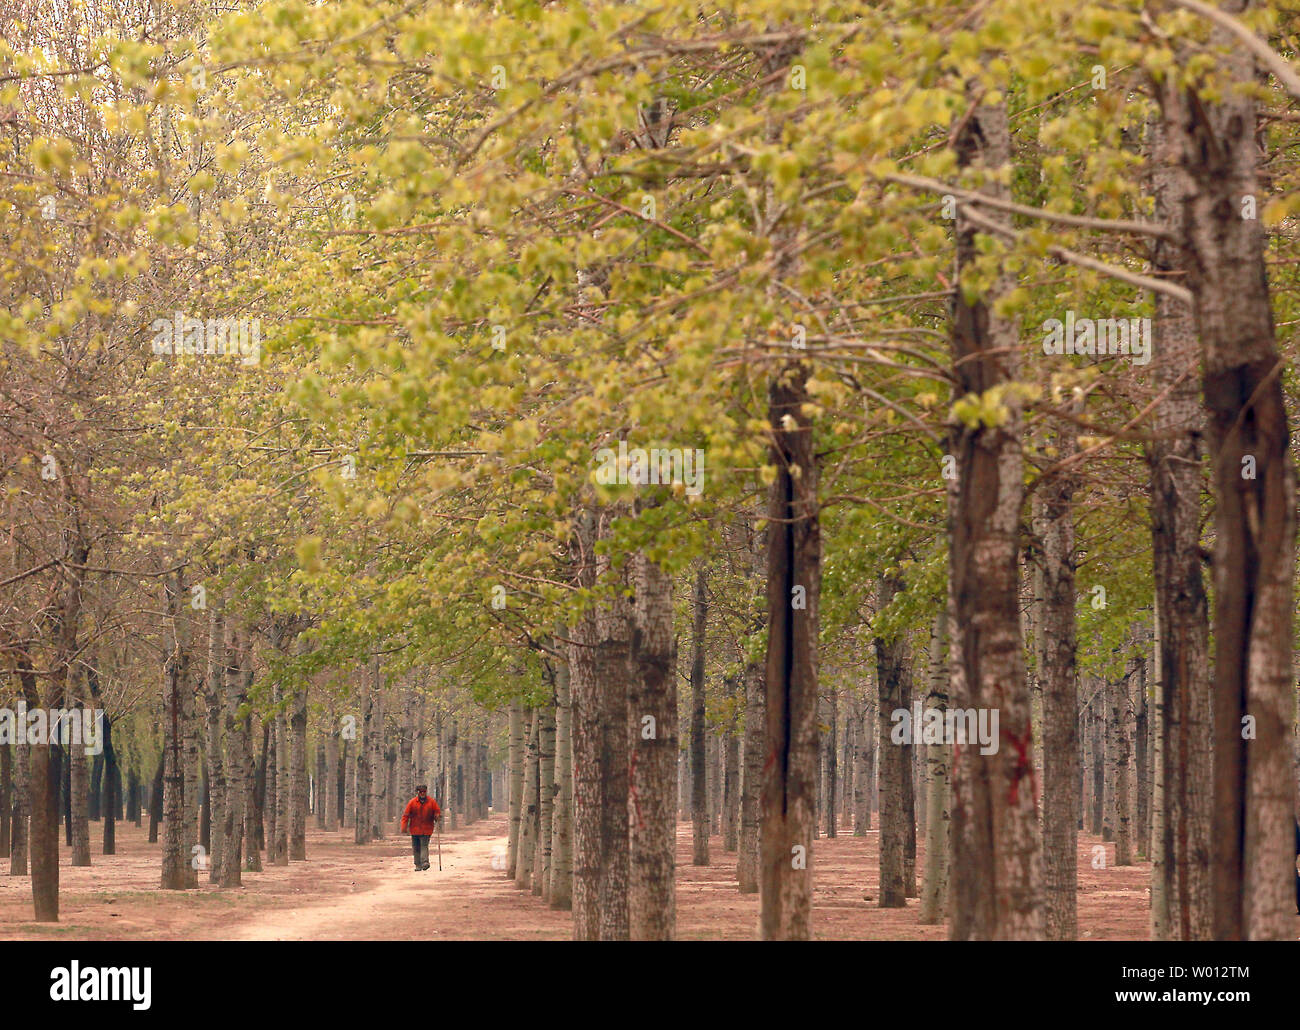 Ein chinesischer Mann geht ein Weg durch einen Baum Barriere gepflanzt, die Bodenerosion und -verschmutzung, Peking am 22. April 2013 zu kämpfen. Eine dreijährige Untersuchung hat ergeben, dass fast 40 Prozent der chinesischen Hoheitsgebiets von Bodenerosion durch fruchtbare Entwicklung. UPI/Stephen Rasierer Stockfoto